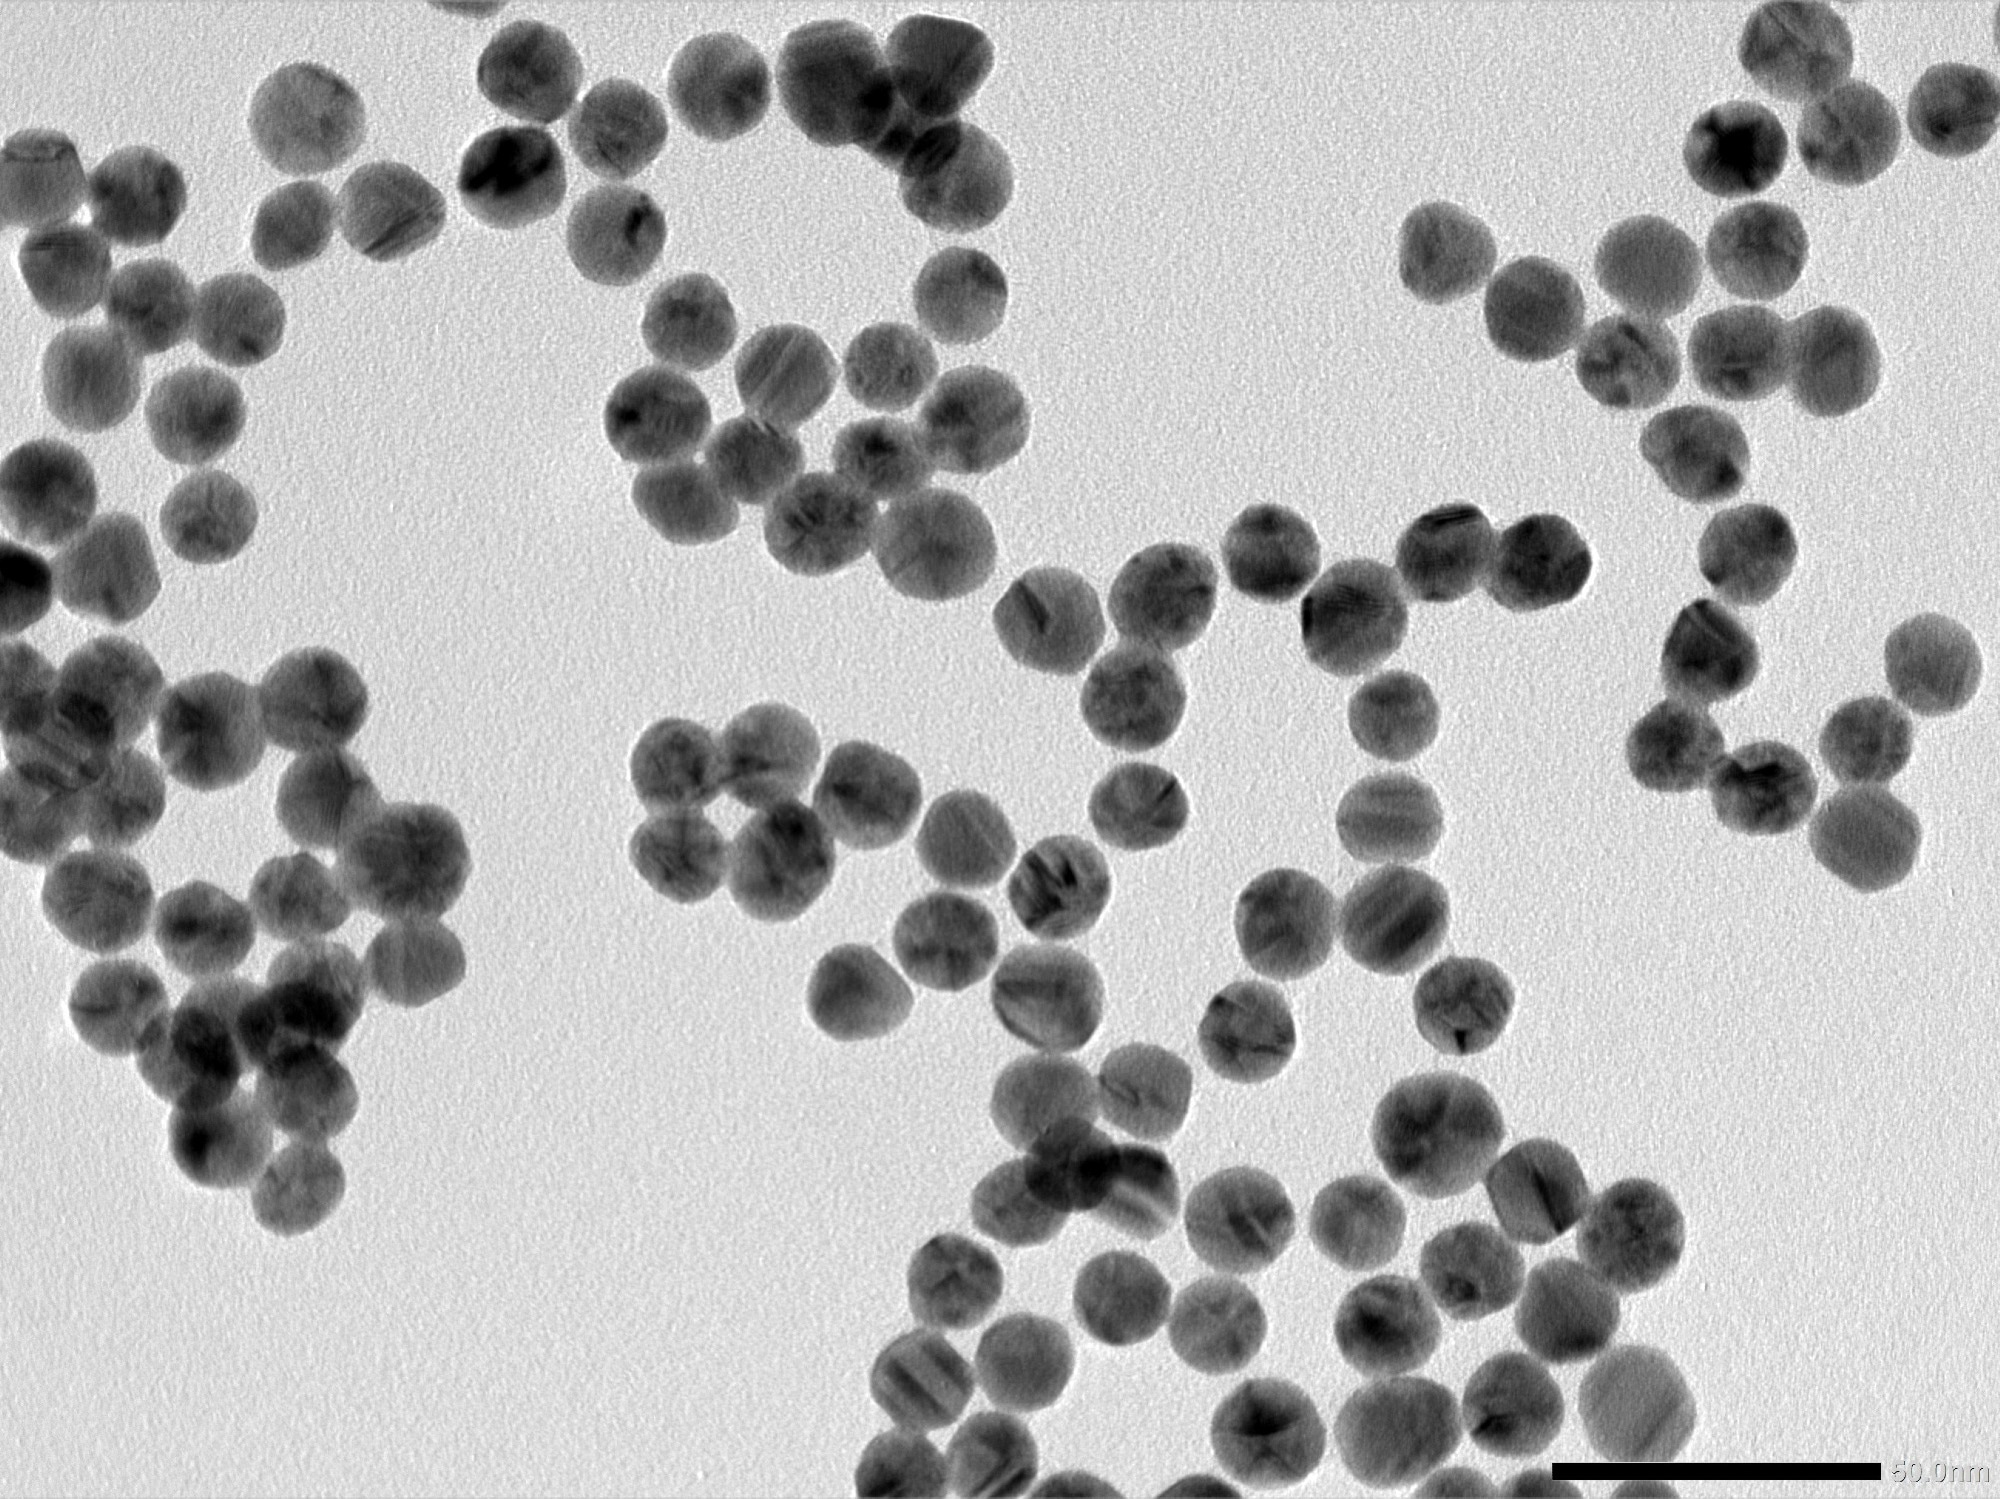 Étude : Nanoparticules et autres nanostructures et contrôle des agents pathogènes : du laboratoire aux vaccins. Crédit d'image : nararat yong / Shutterstock.com